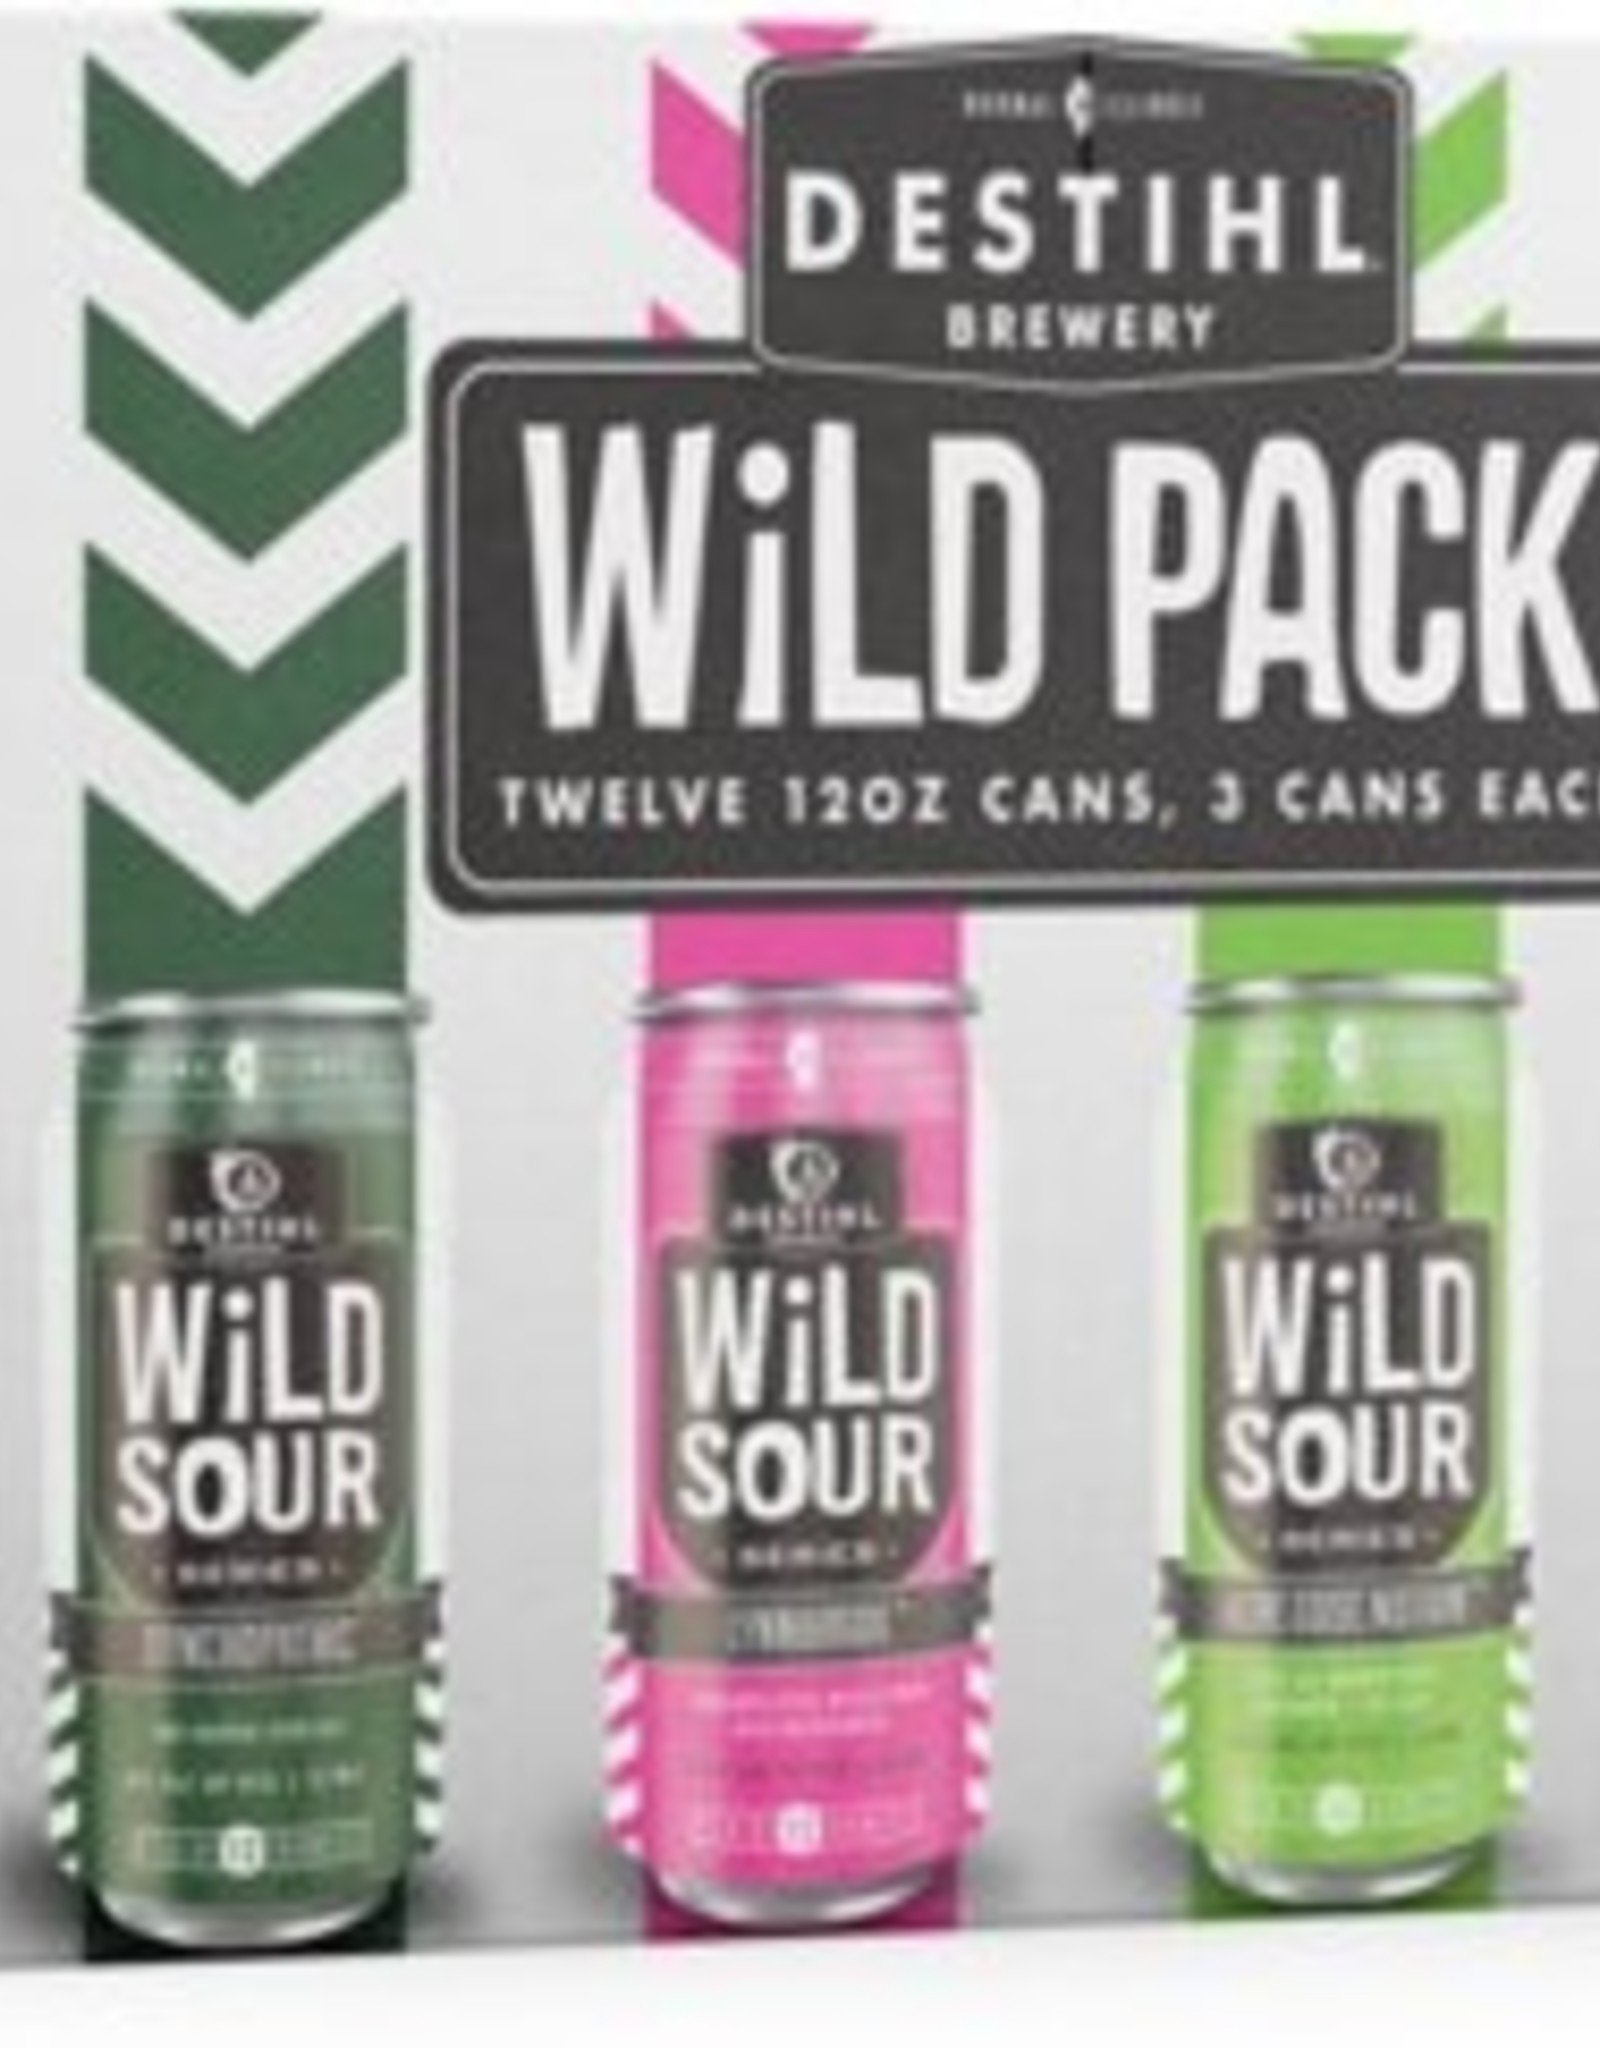 Destihl Wild Sour Wild Pack 12x12 oz cans